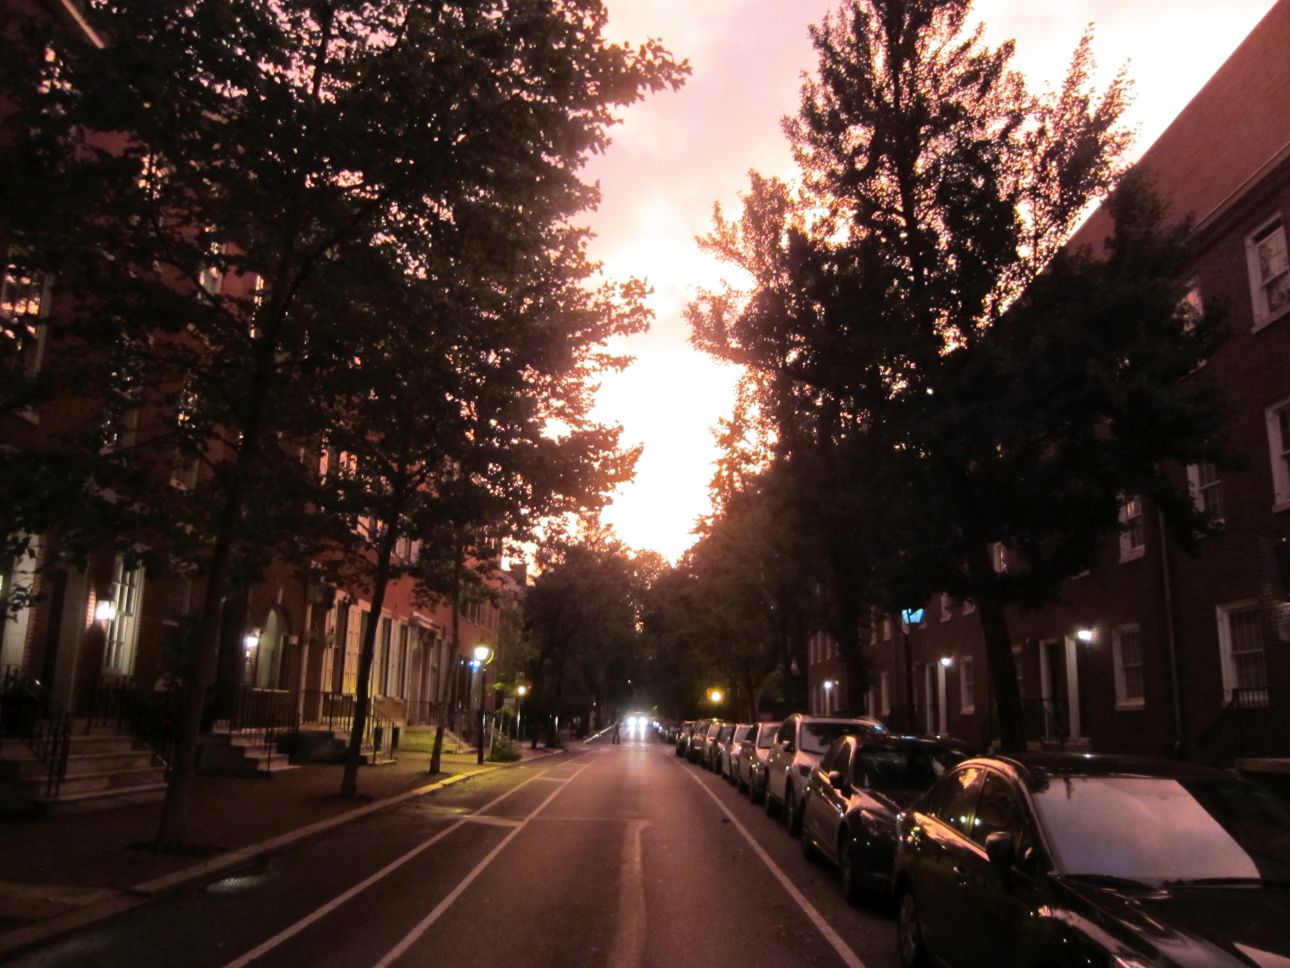 Pine Street, Philadelphia, at dusk